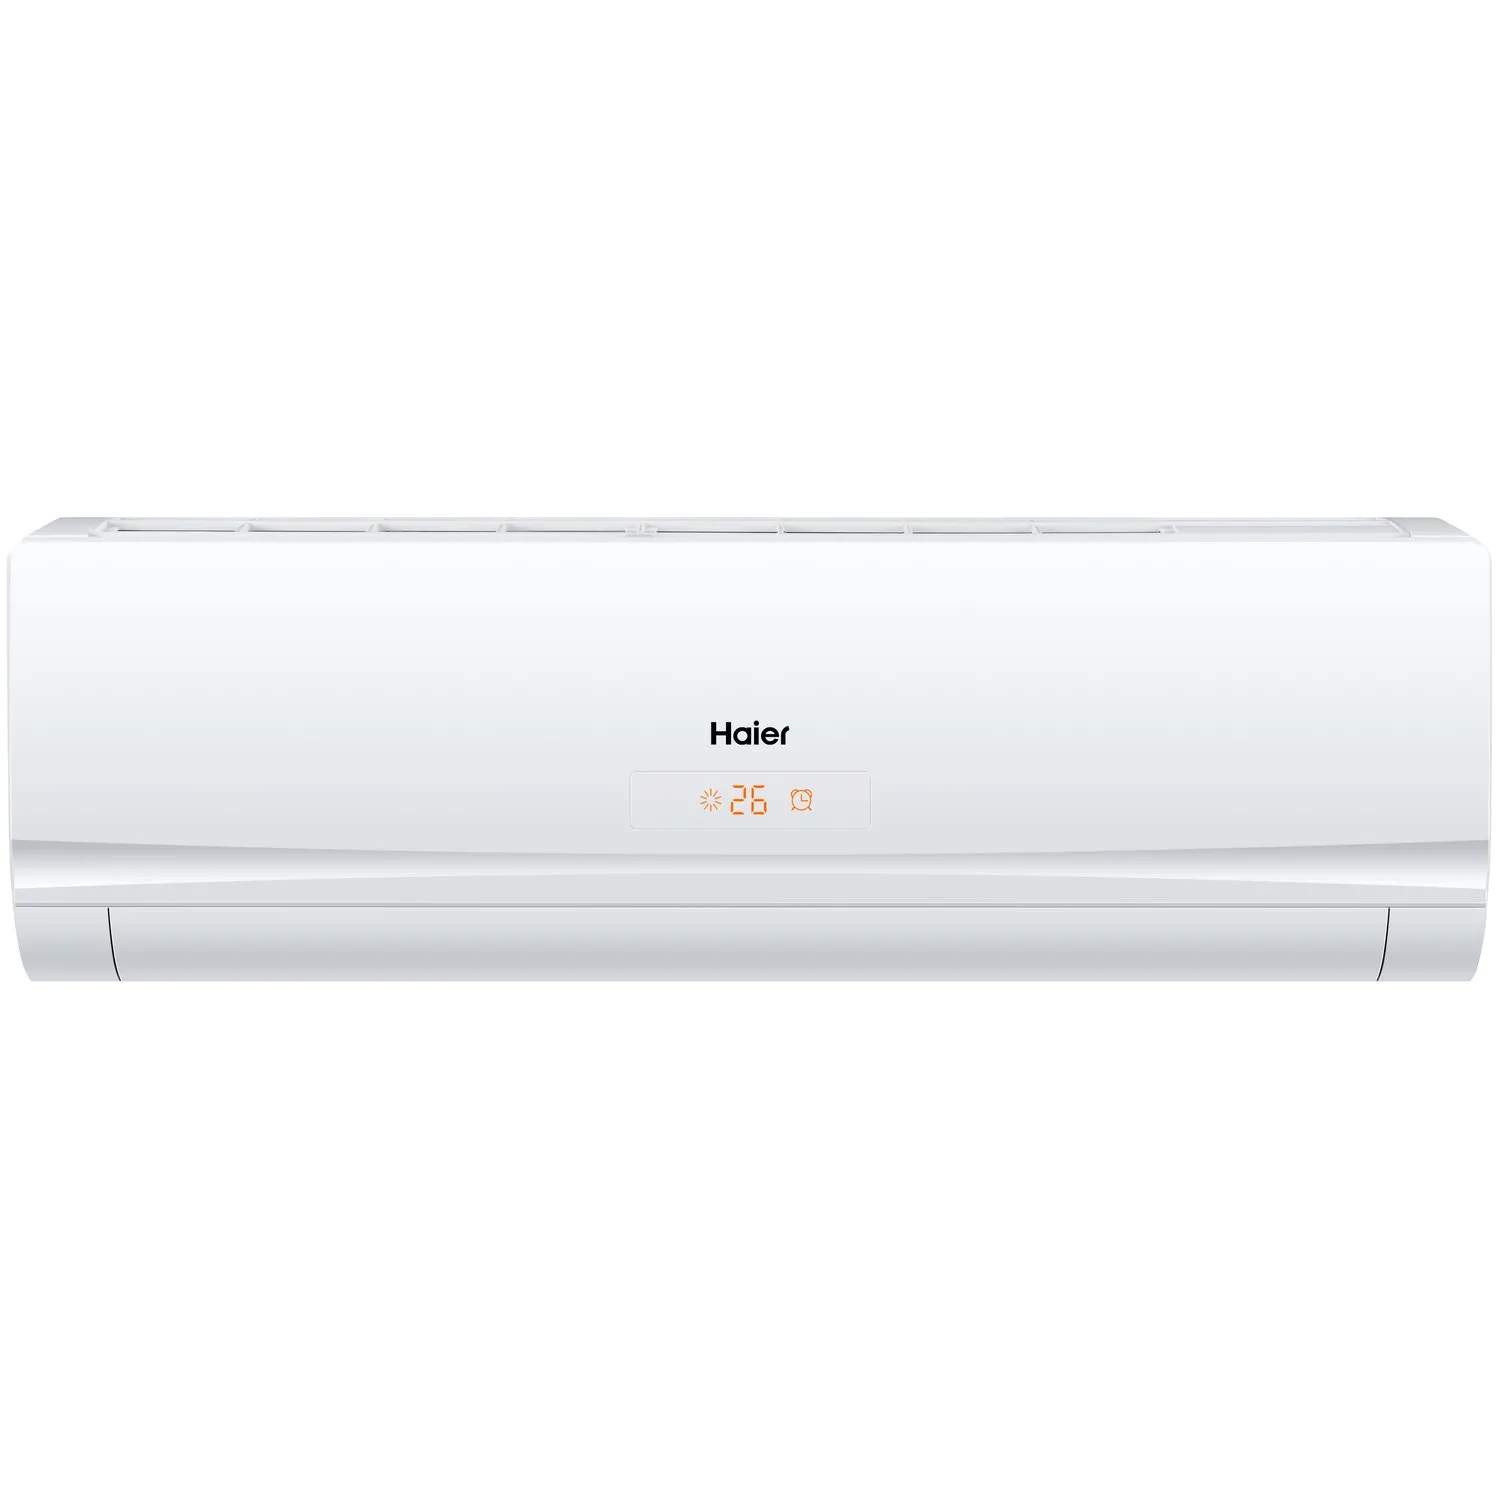 Haier 2 Ton Split Air Conditioner 24000 BTU Color White Model – HSU-24LNL03/R2(T3)-N – 1 Year Full 5 Year Compressor Warranty.